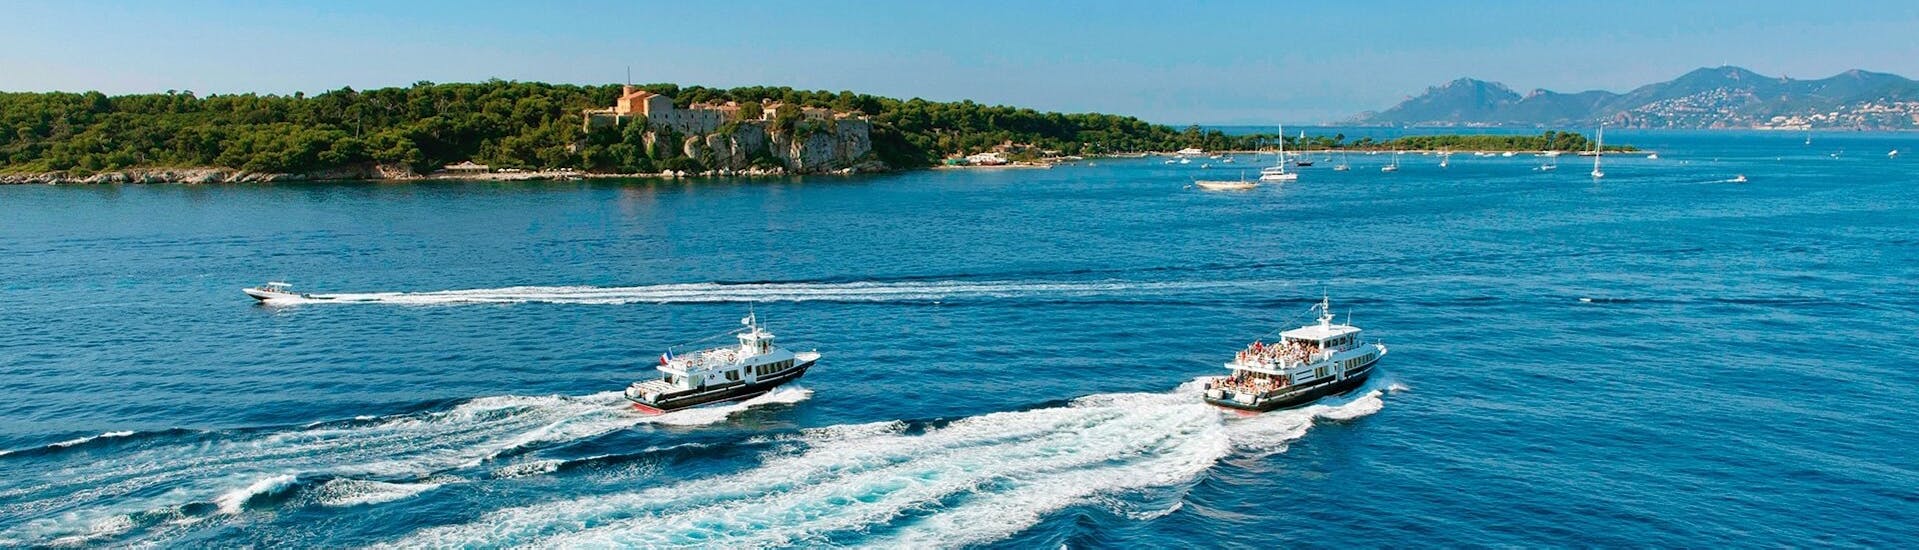 Blick auf die Boote während des Bootstransfers von Cannes zur Insel Sainte-Marguerite mit Trans Côte d'Azur.